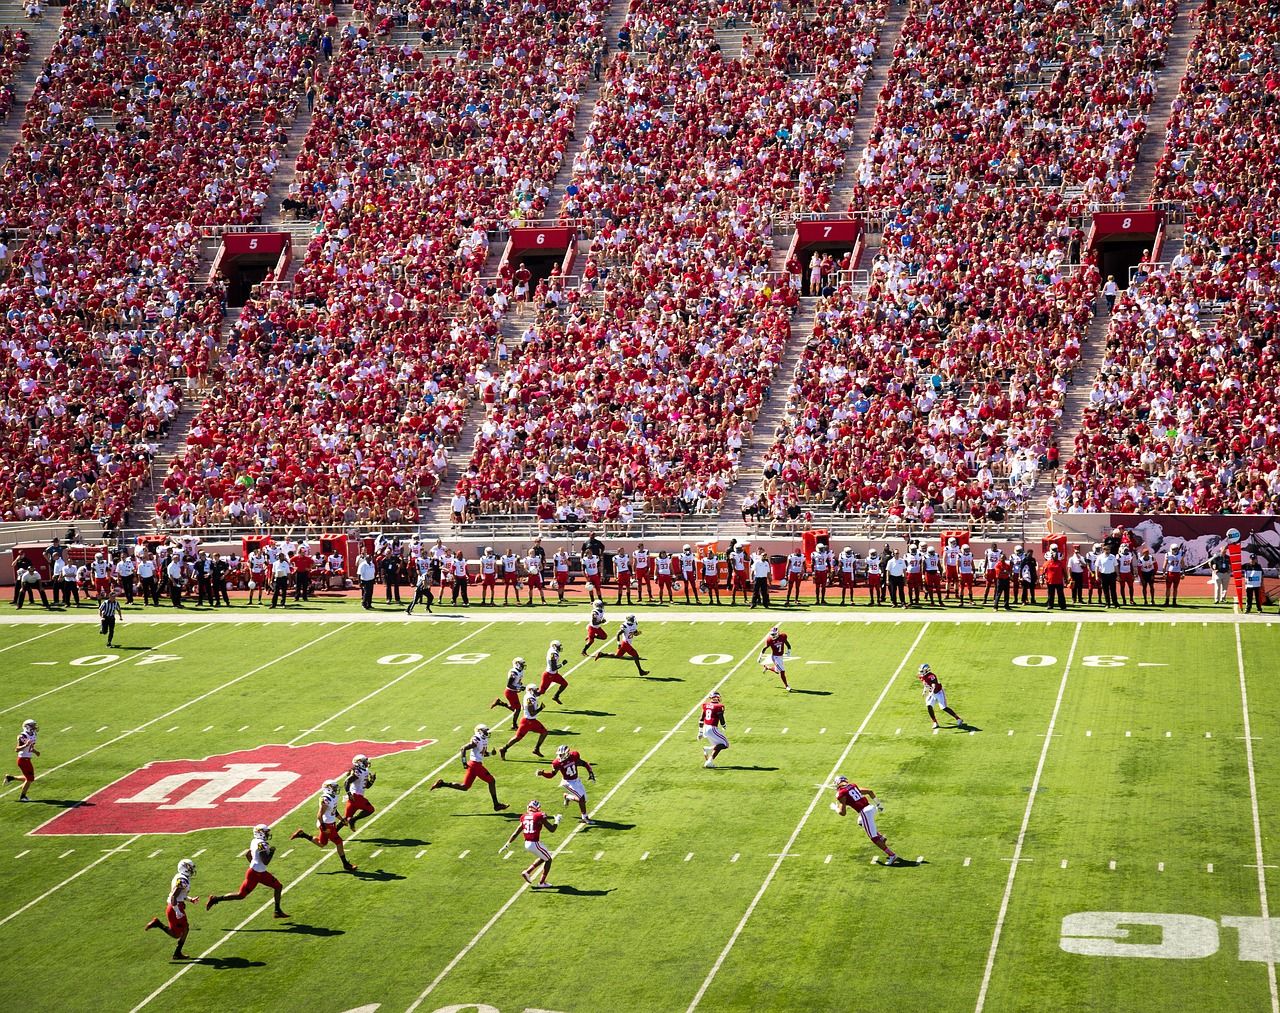 Luchtfoto van een drukbezochte college football wedstrijd bij Indiana University, met spelers in actie op het veld en fans op de tribunes.